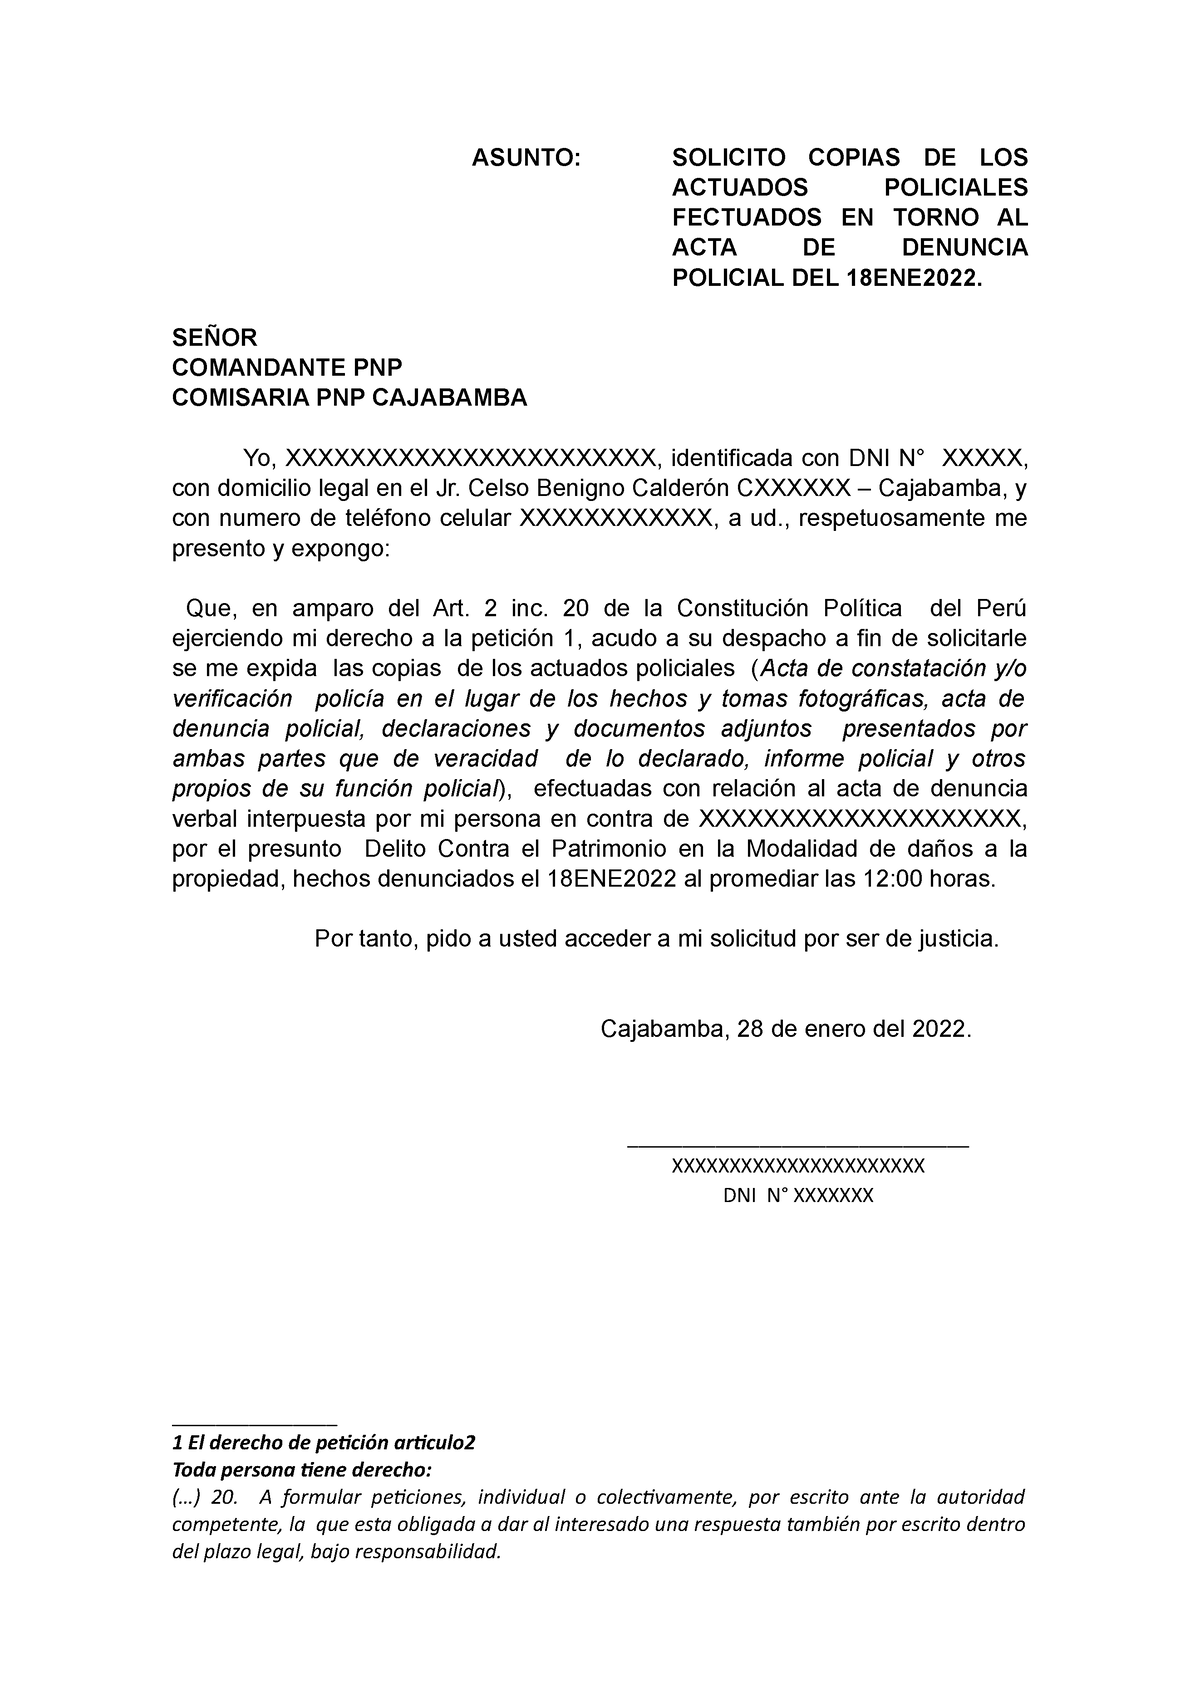 Modelo de Solicitud para solicitar copia de los actudos policiles - ASUNTO:  SOLICITO COPIAS DE LOS - Studocu